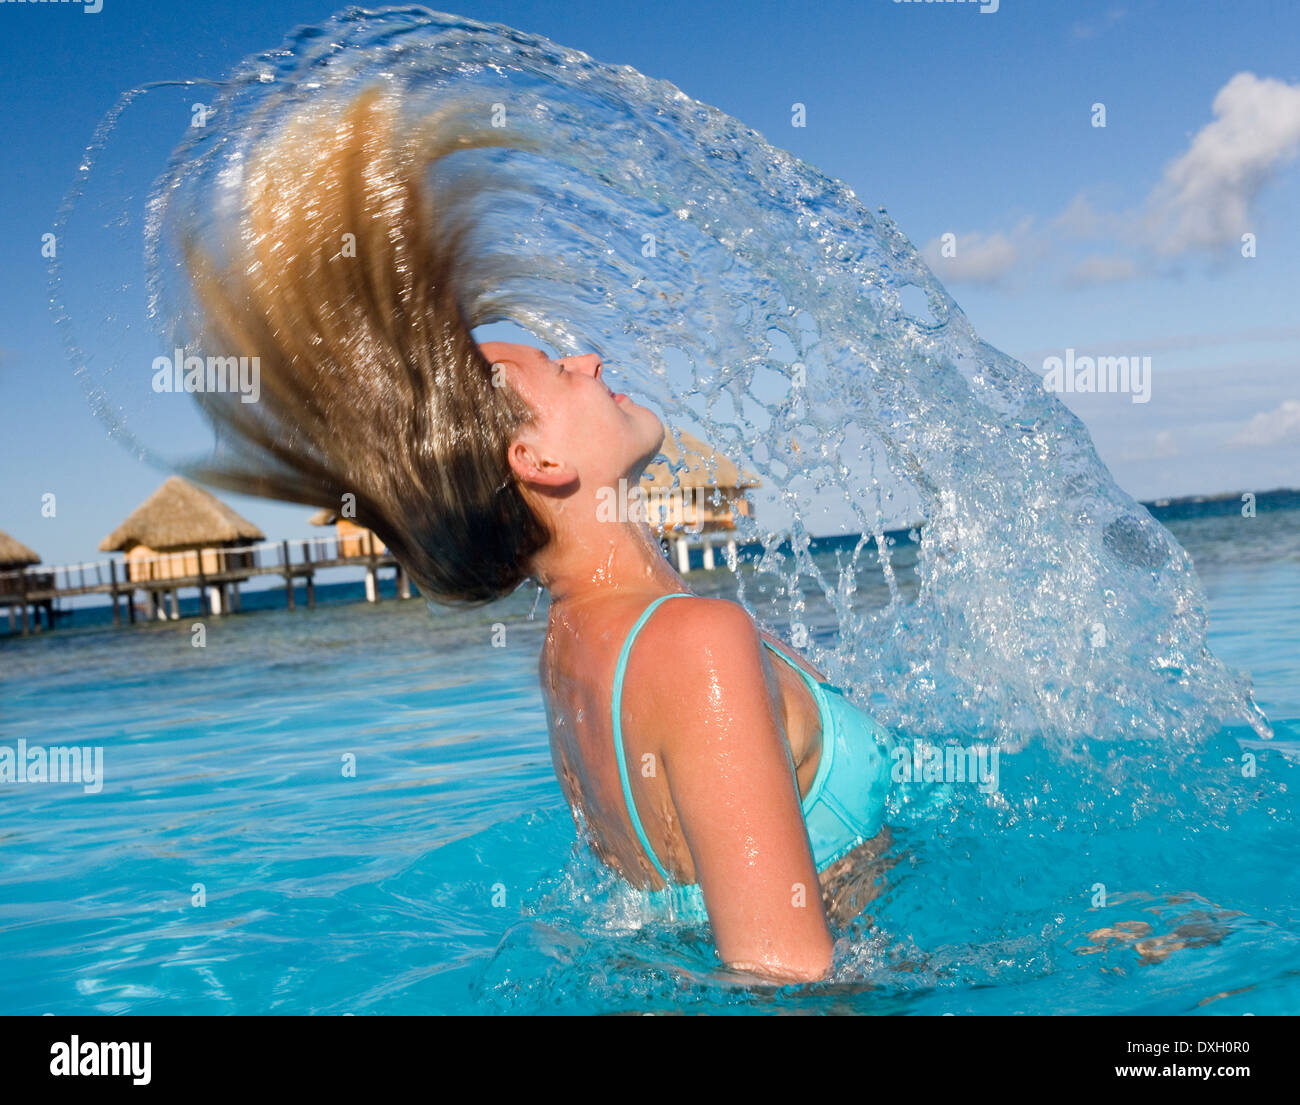 Mädchen im Bikini wirft ihr Haar zurück in eine Dusche von Spray in einem  tropischen Luxus-Resort in Französisch-Polynesien Stockfotografie - Alamy